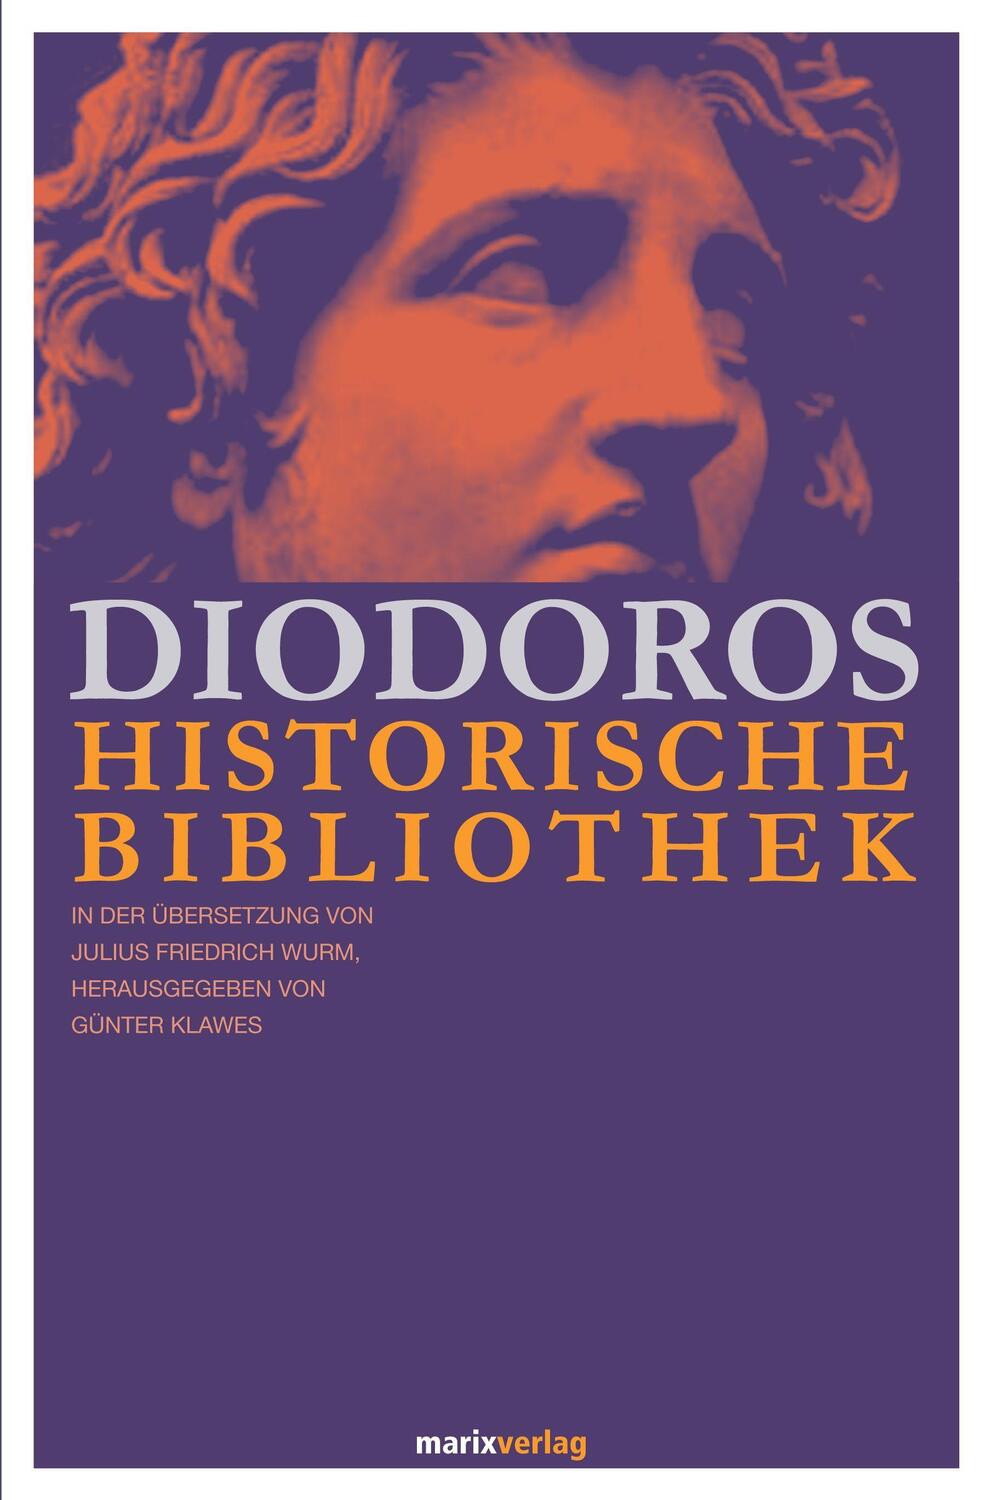 Diodoros Historische Bibliothek - Diodoros